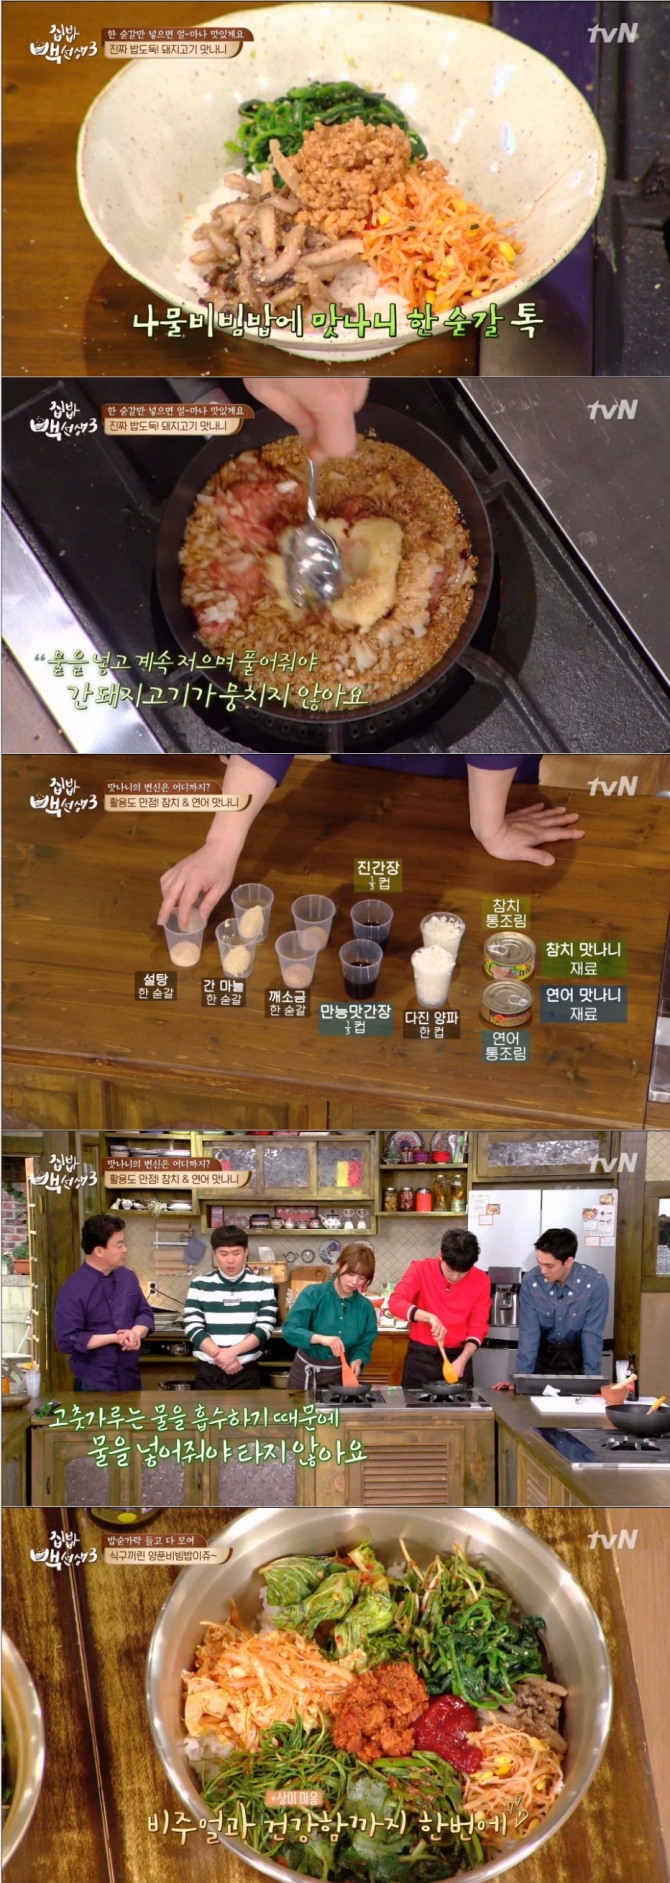 21일 방송된 tvN '집밥 백선생3'에서는 백종원이 양푼비빔밥 핵심 비법으로 봄나물 겉절이용 '만능양념장' 레시피와 '돼지고기만나니', '참치&연어만나니' 레시피를 공개했다./사진=tvN 방송 캡처